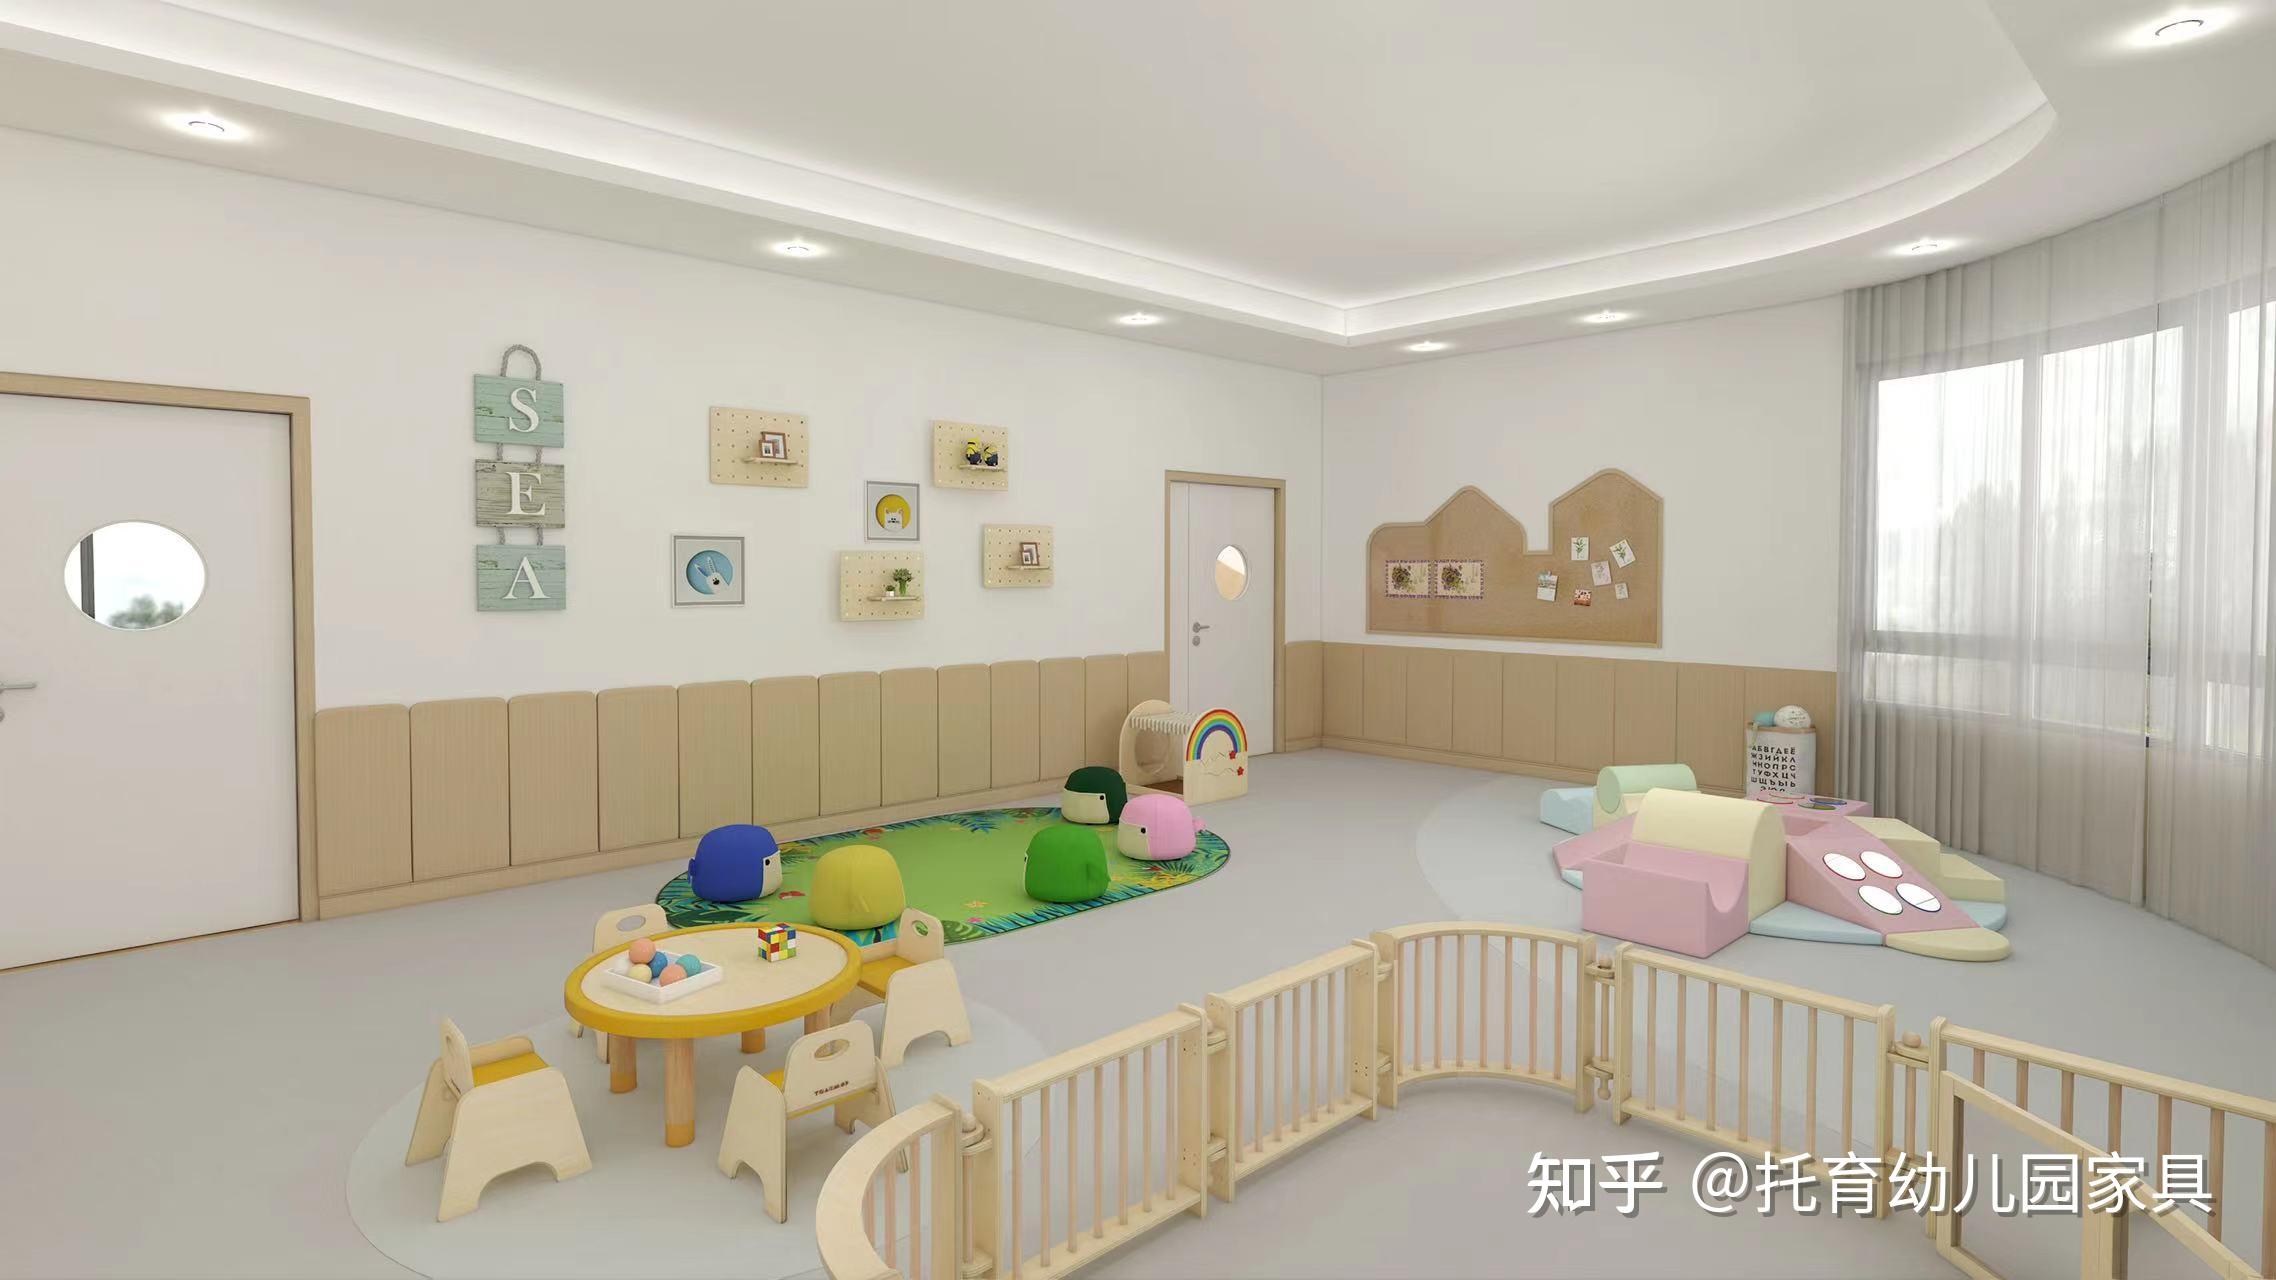 CPE中国幼教展快讯 | 旭日教育托育环创设计方案+教具创新呈现